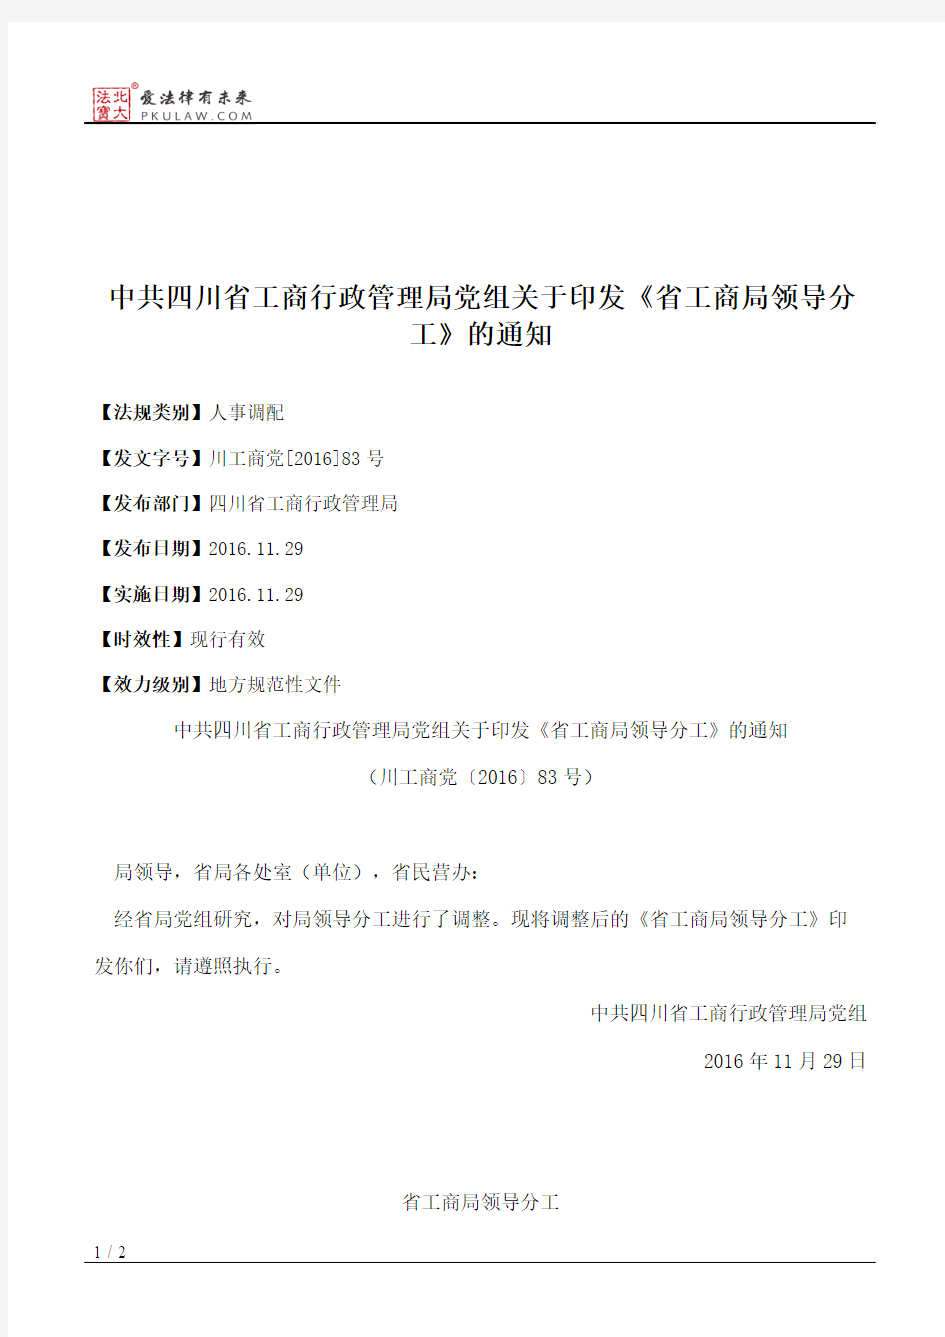 中共四川省工商行政管理局党组关于印发《省工商局领导分工》的通知